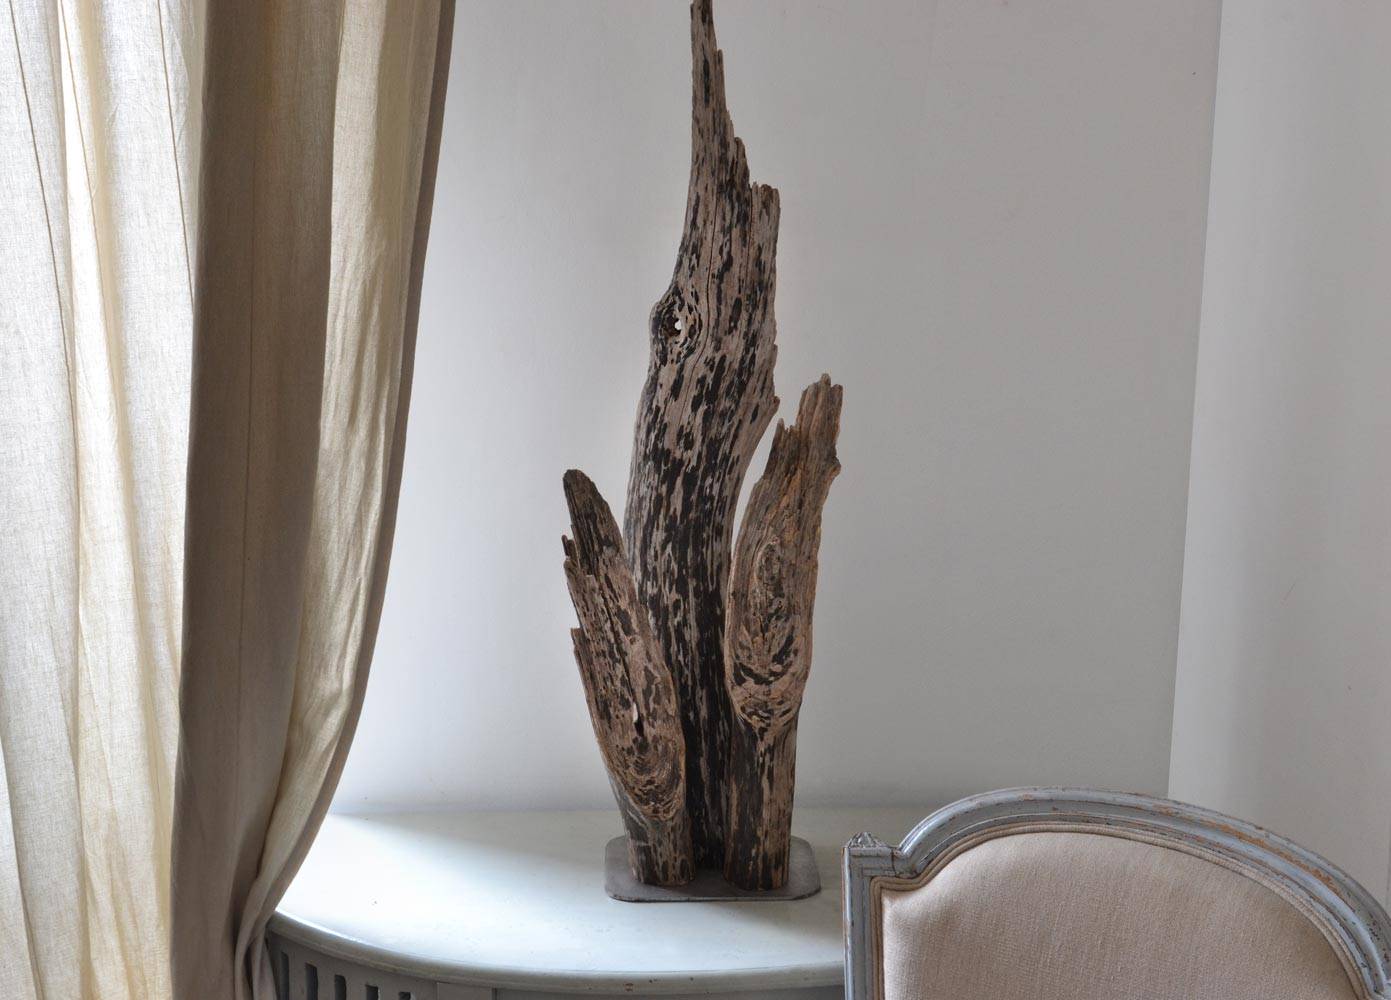 Lampe bois flotté, design brut et naturel par le sculpteur et artiste français Frédéric Ansermet